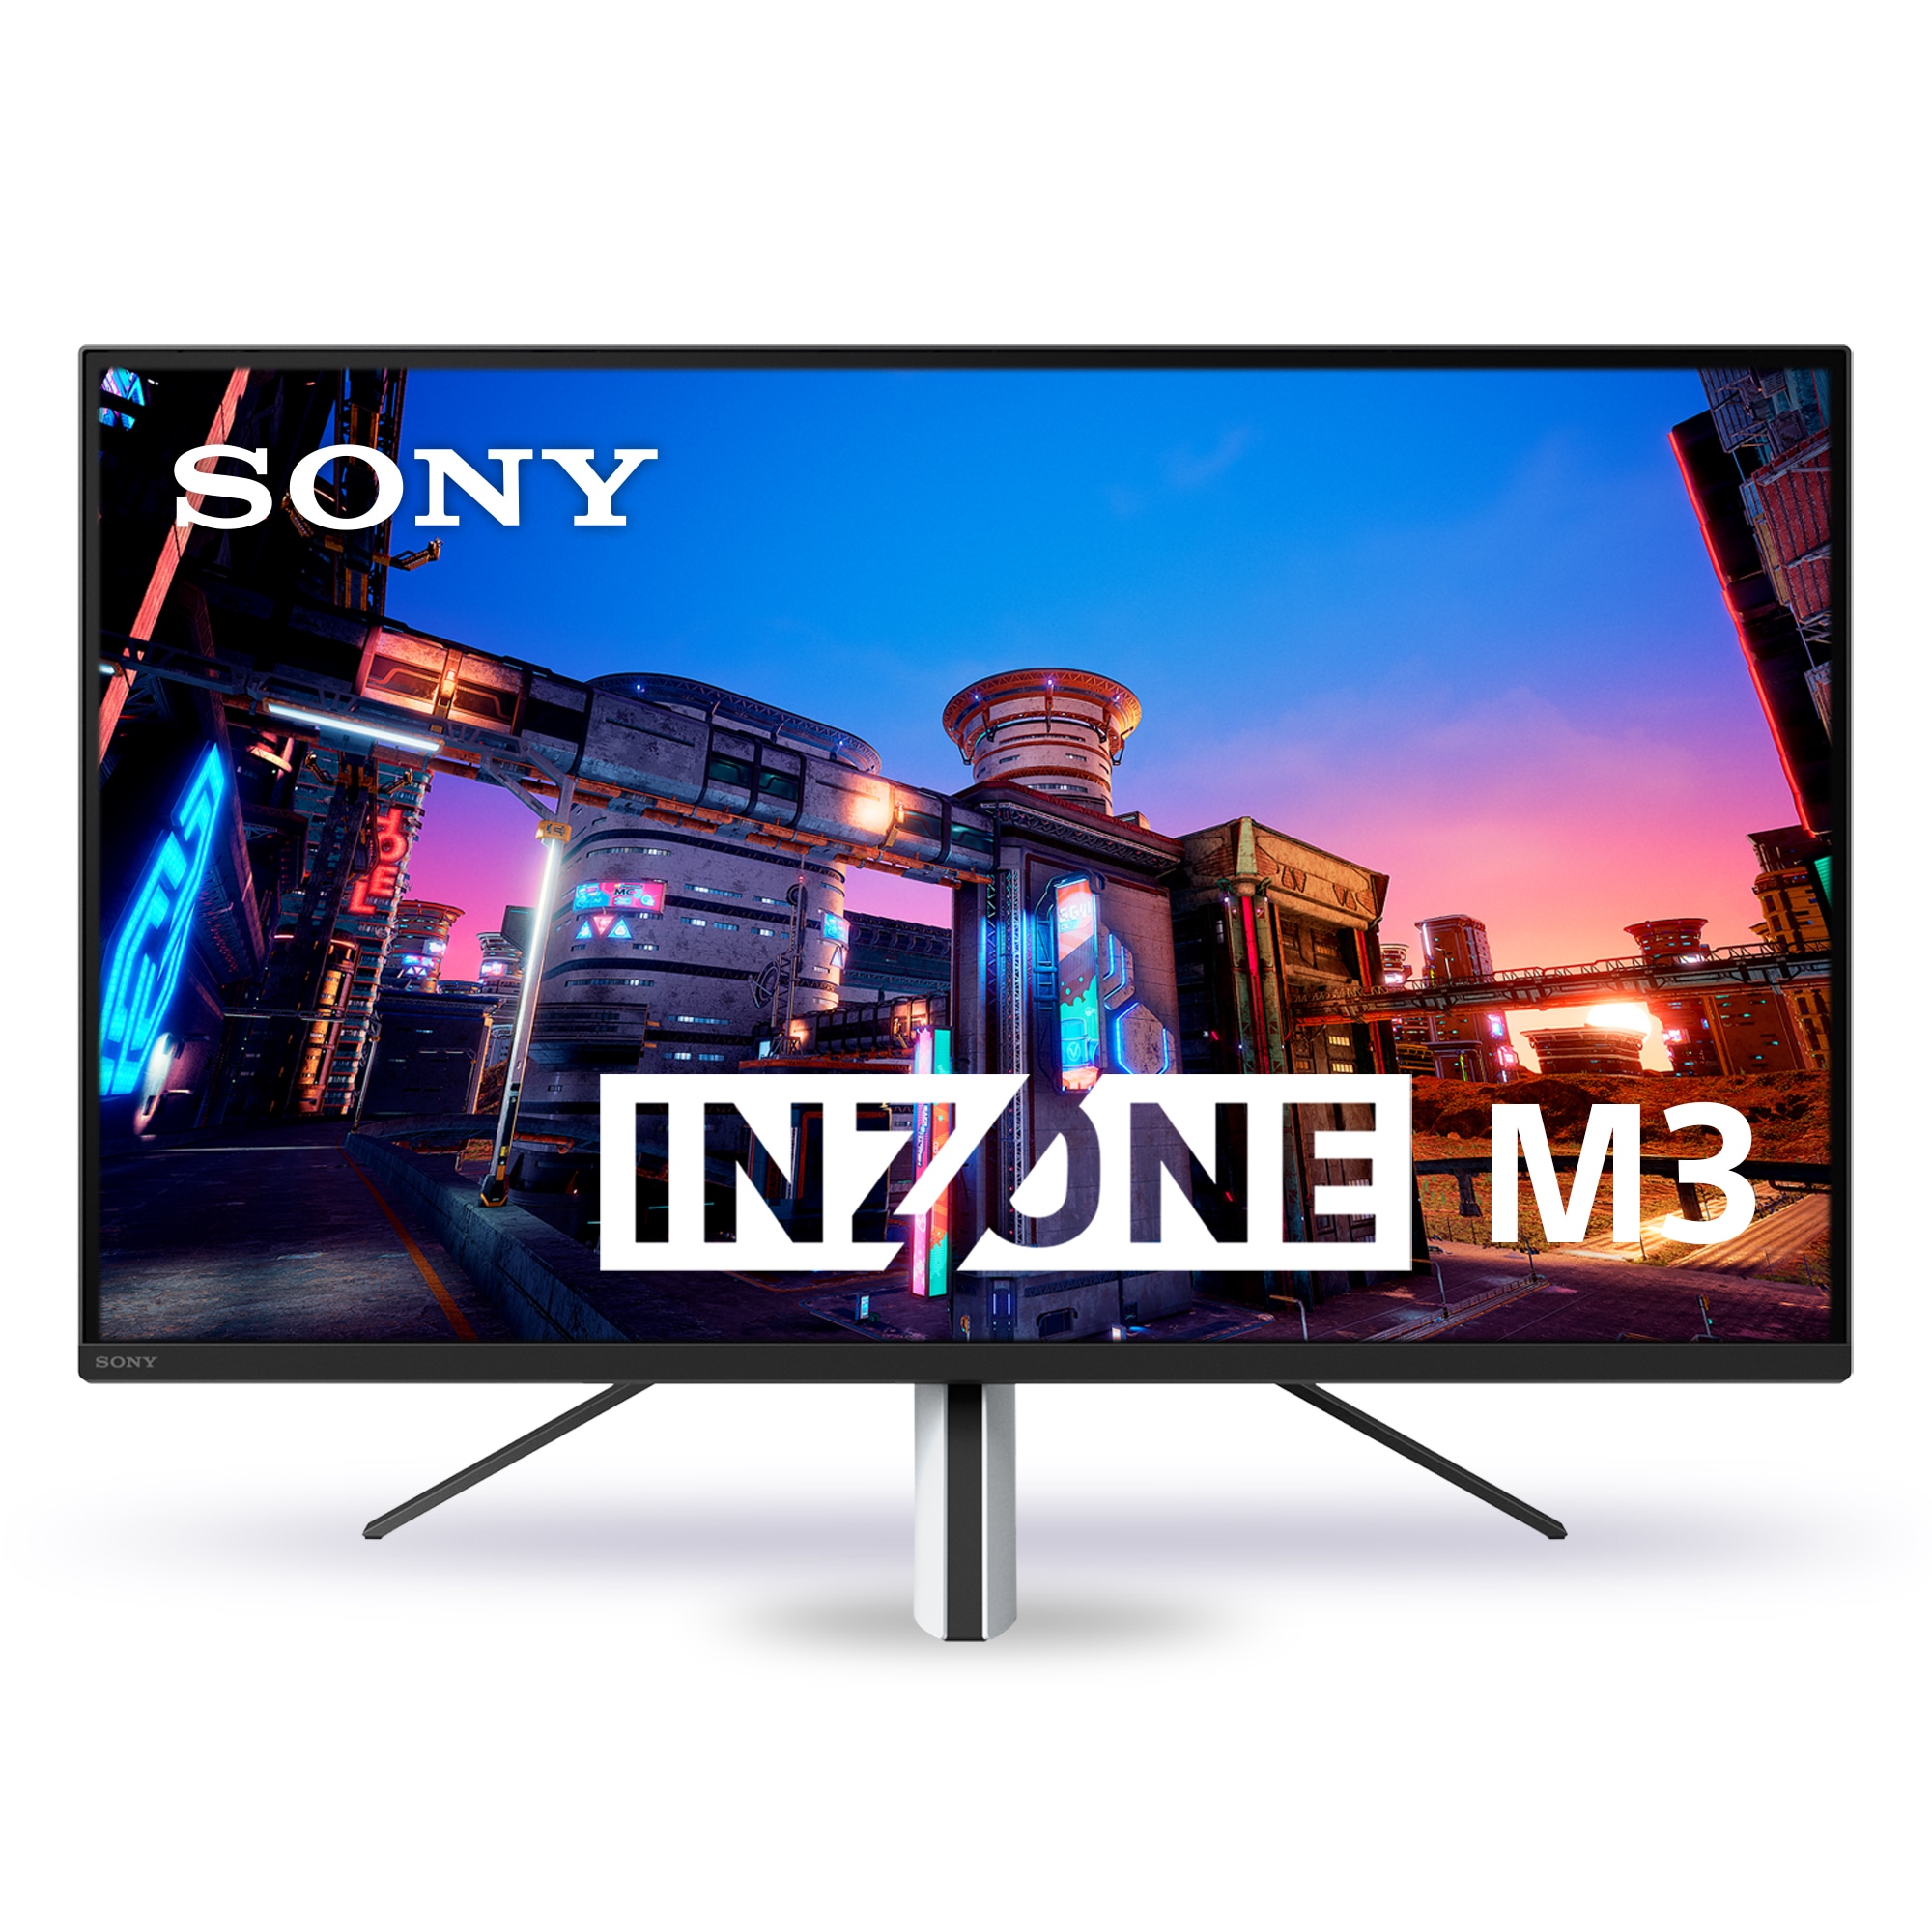 Tuotekuva Sony INZONE  M3 -näytöstä